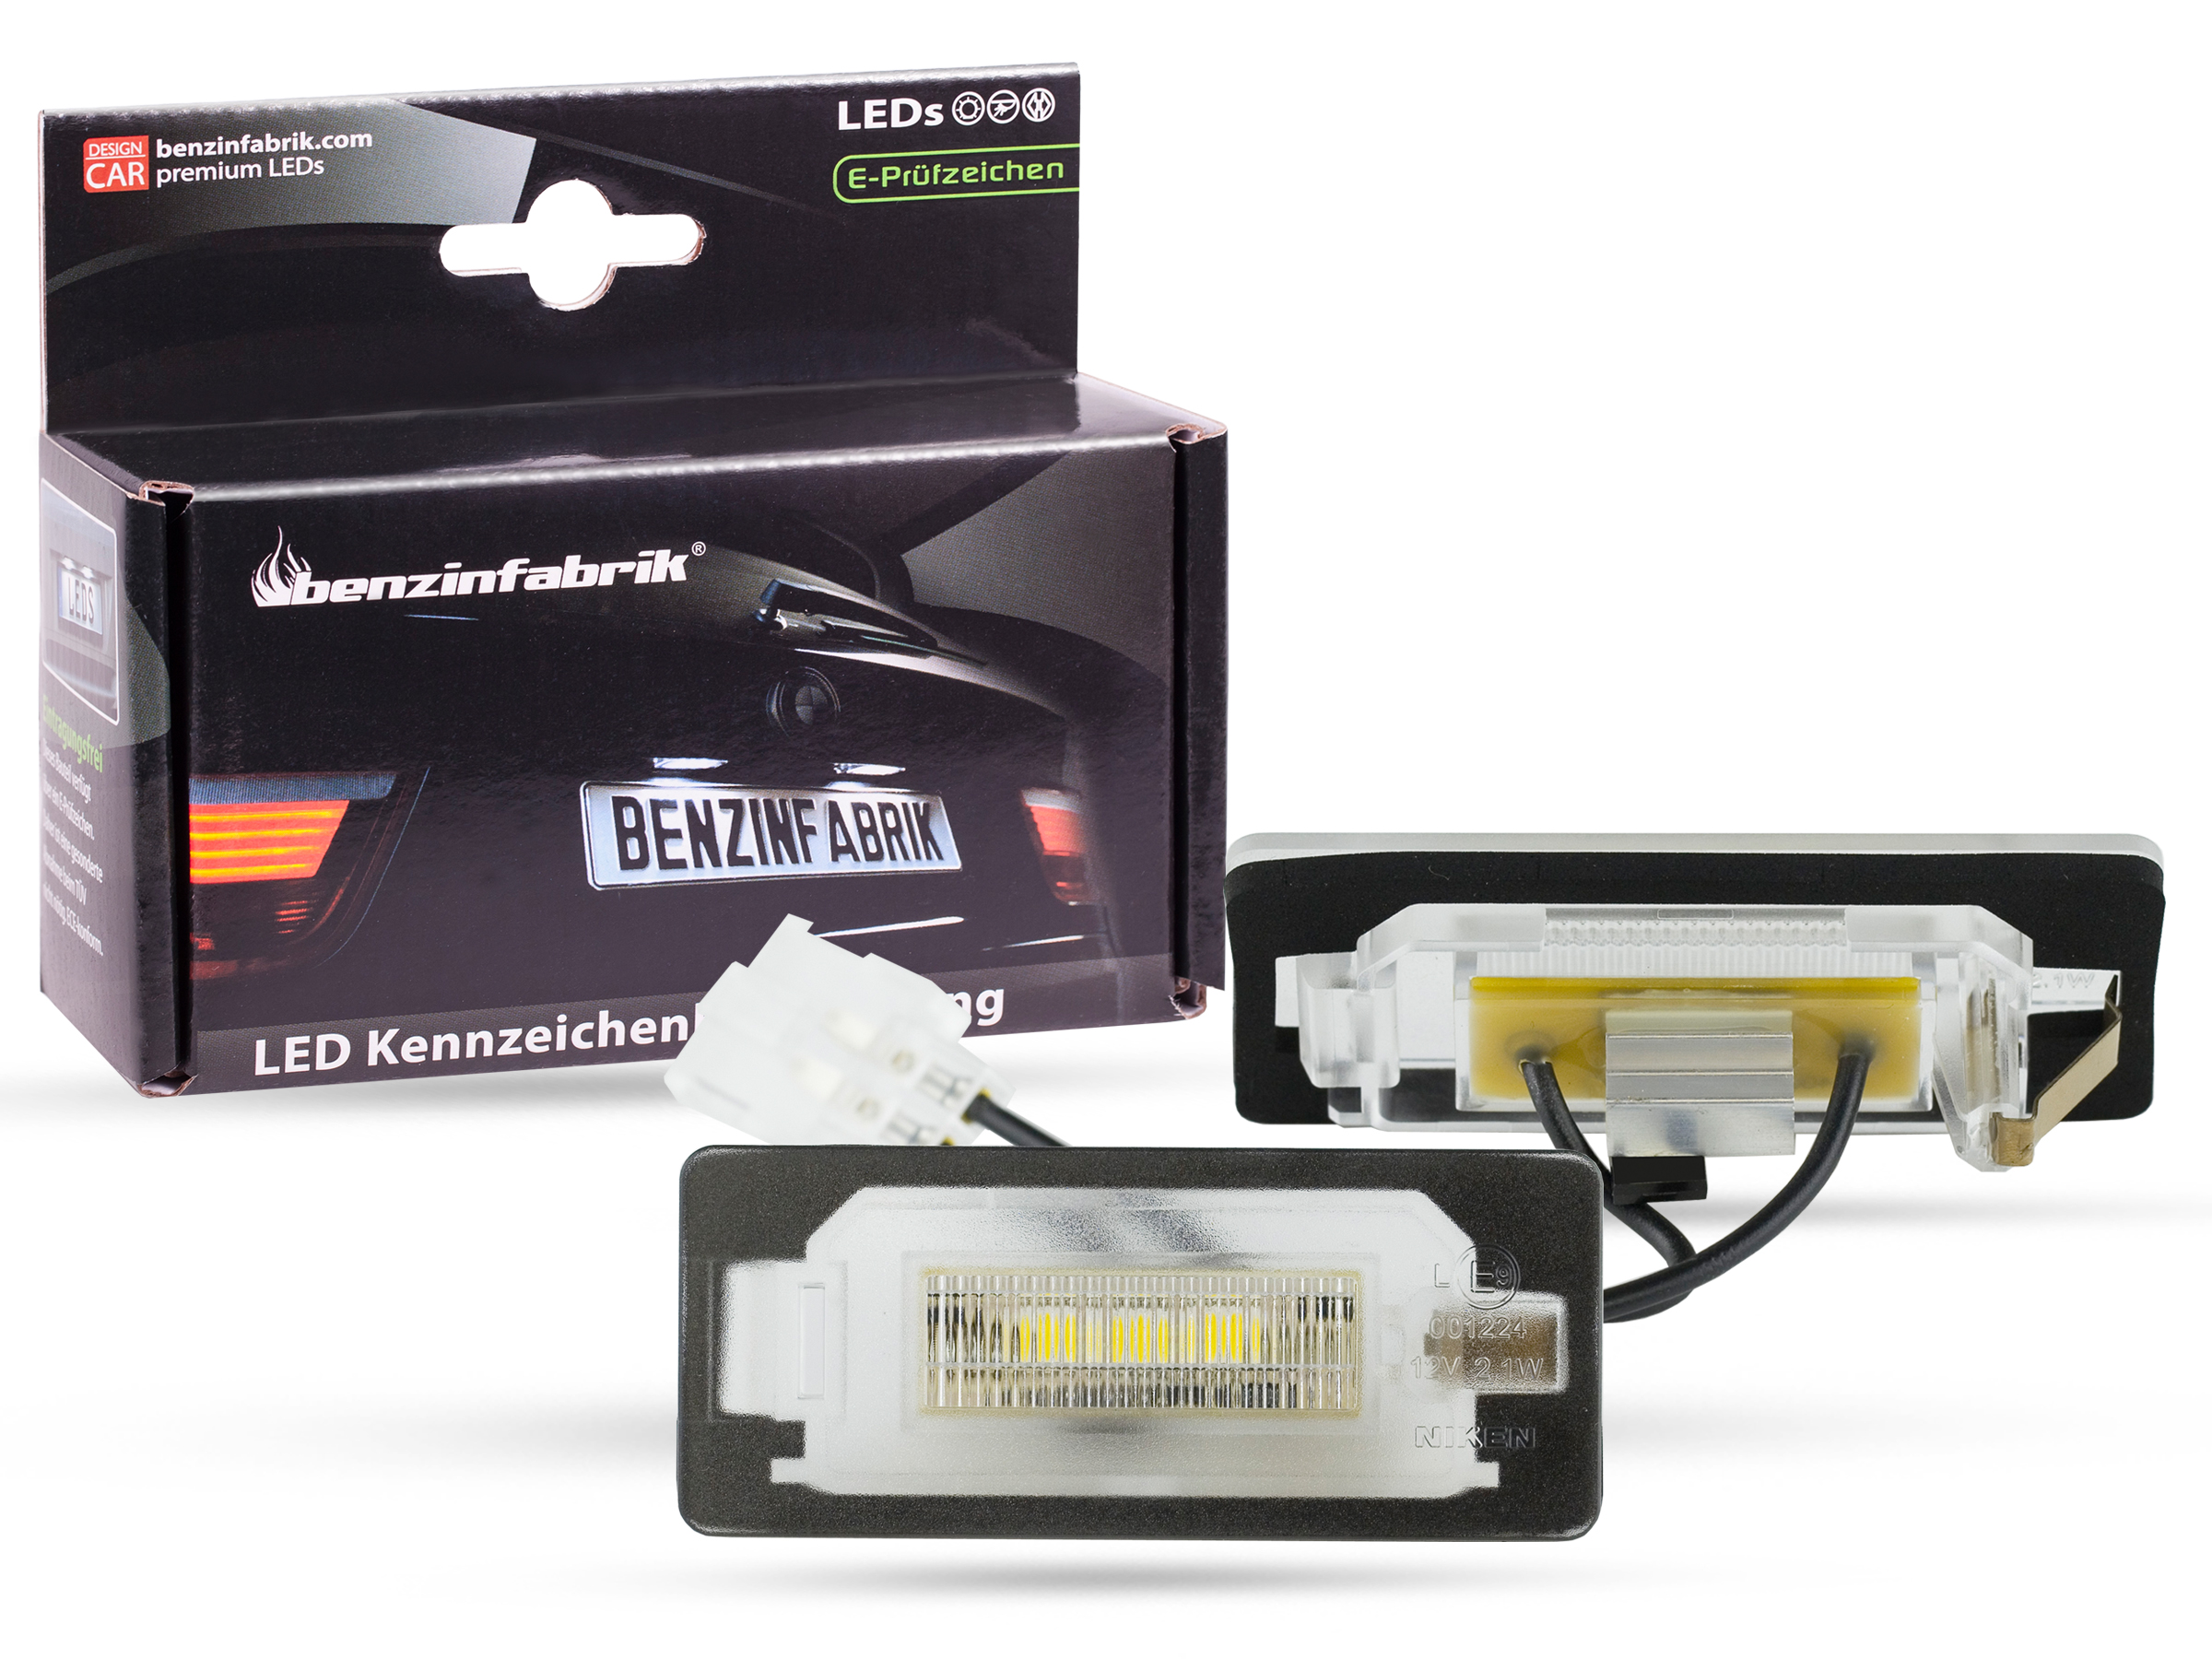 LED Kennzeichenbeleuchtung Module Skoda Octavia 5E Combi, mit E-Prüfzeichen, LED Kennzeichenbeleuchtung für Skoda, LED Kennzeichenbeleuchtung